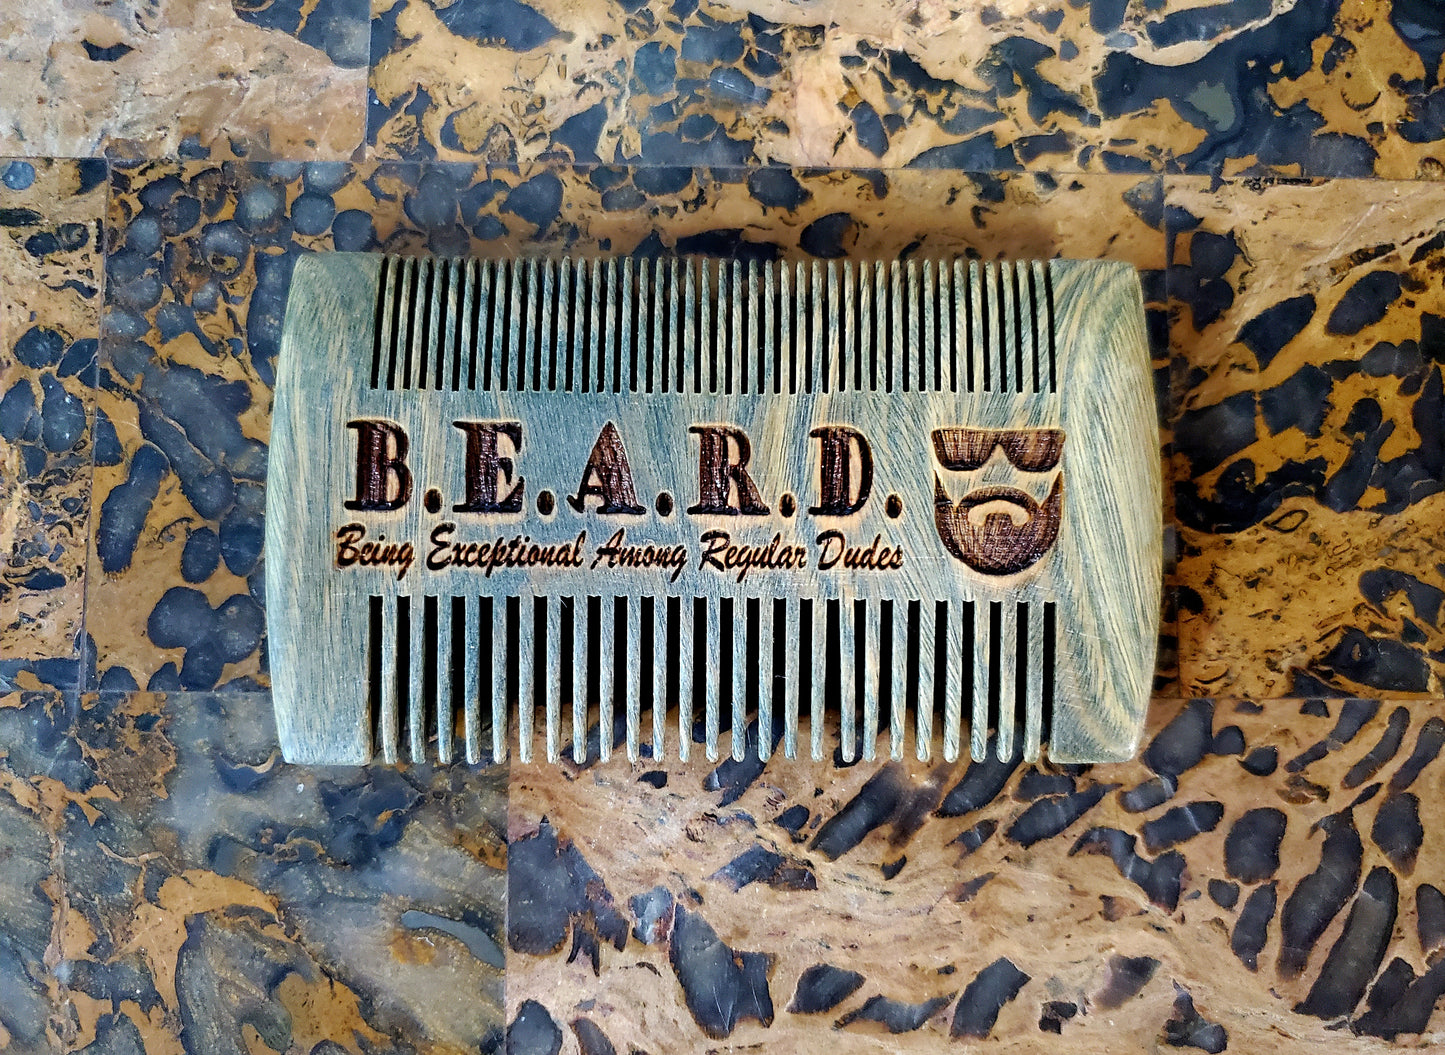 Sandalwood Beard Comb & Leather Sleeve